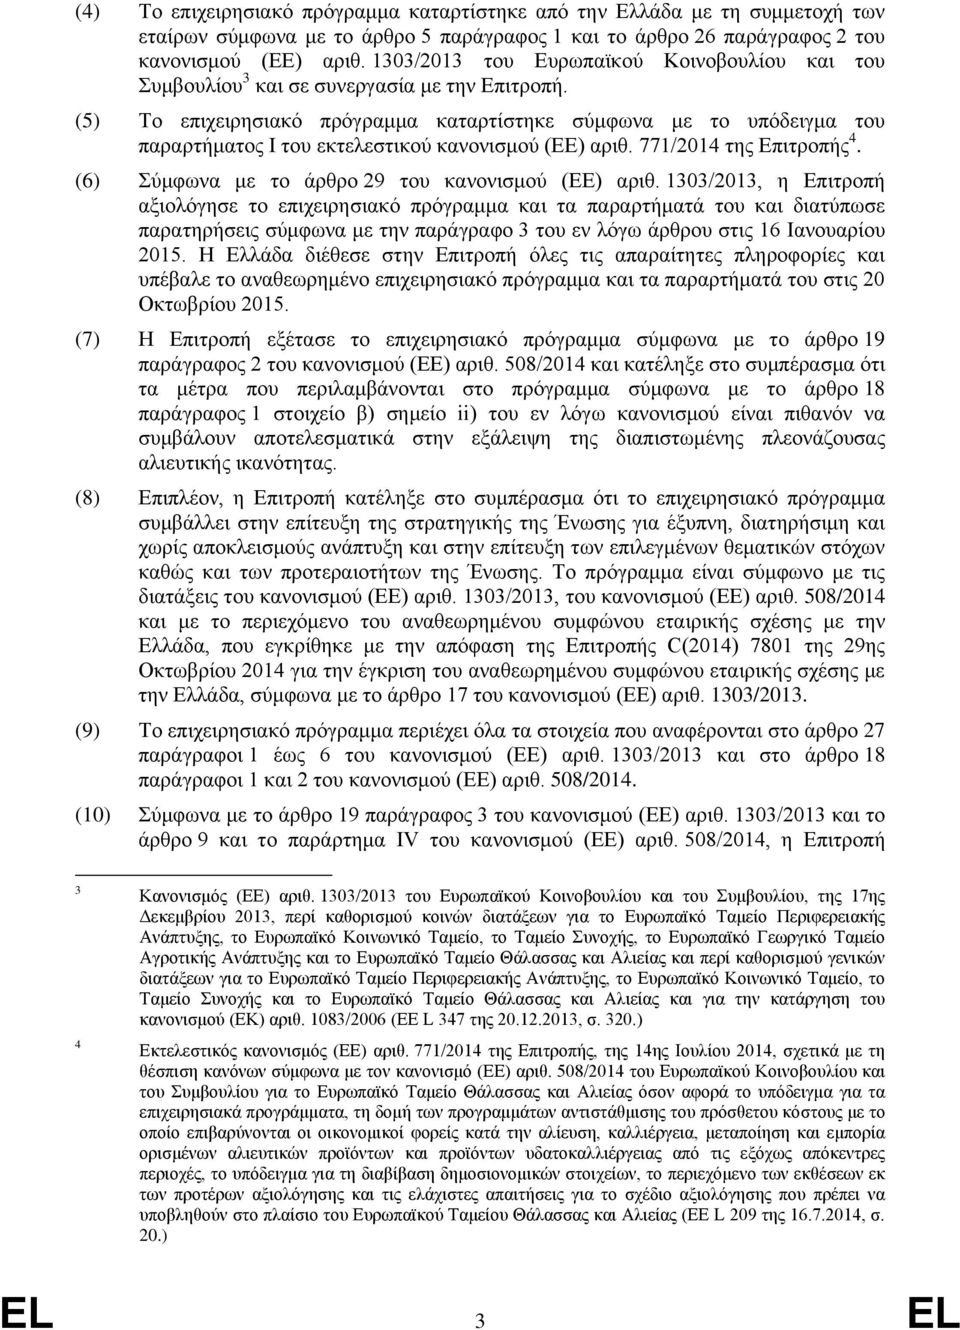 (5) Το επιχειρησιακό πρόγραμμα καταρτίστηκε σύμφωνα με το υπόδειγμα του παραρτήματος Ι του εκτελεστικού κανονισμού (ΕΕ) αριθ. 771/2014 της Επιτροπής 4.